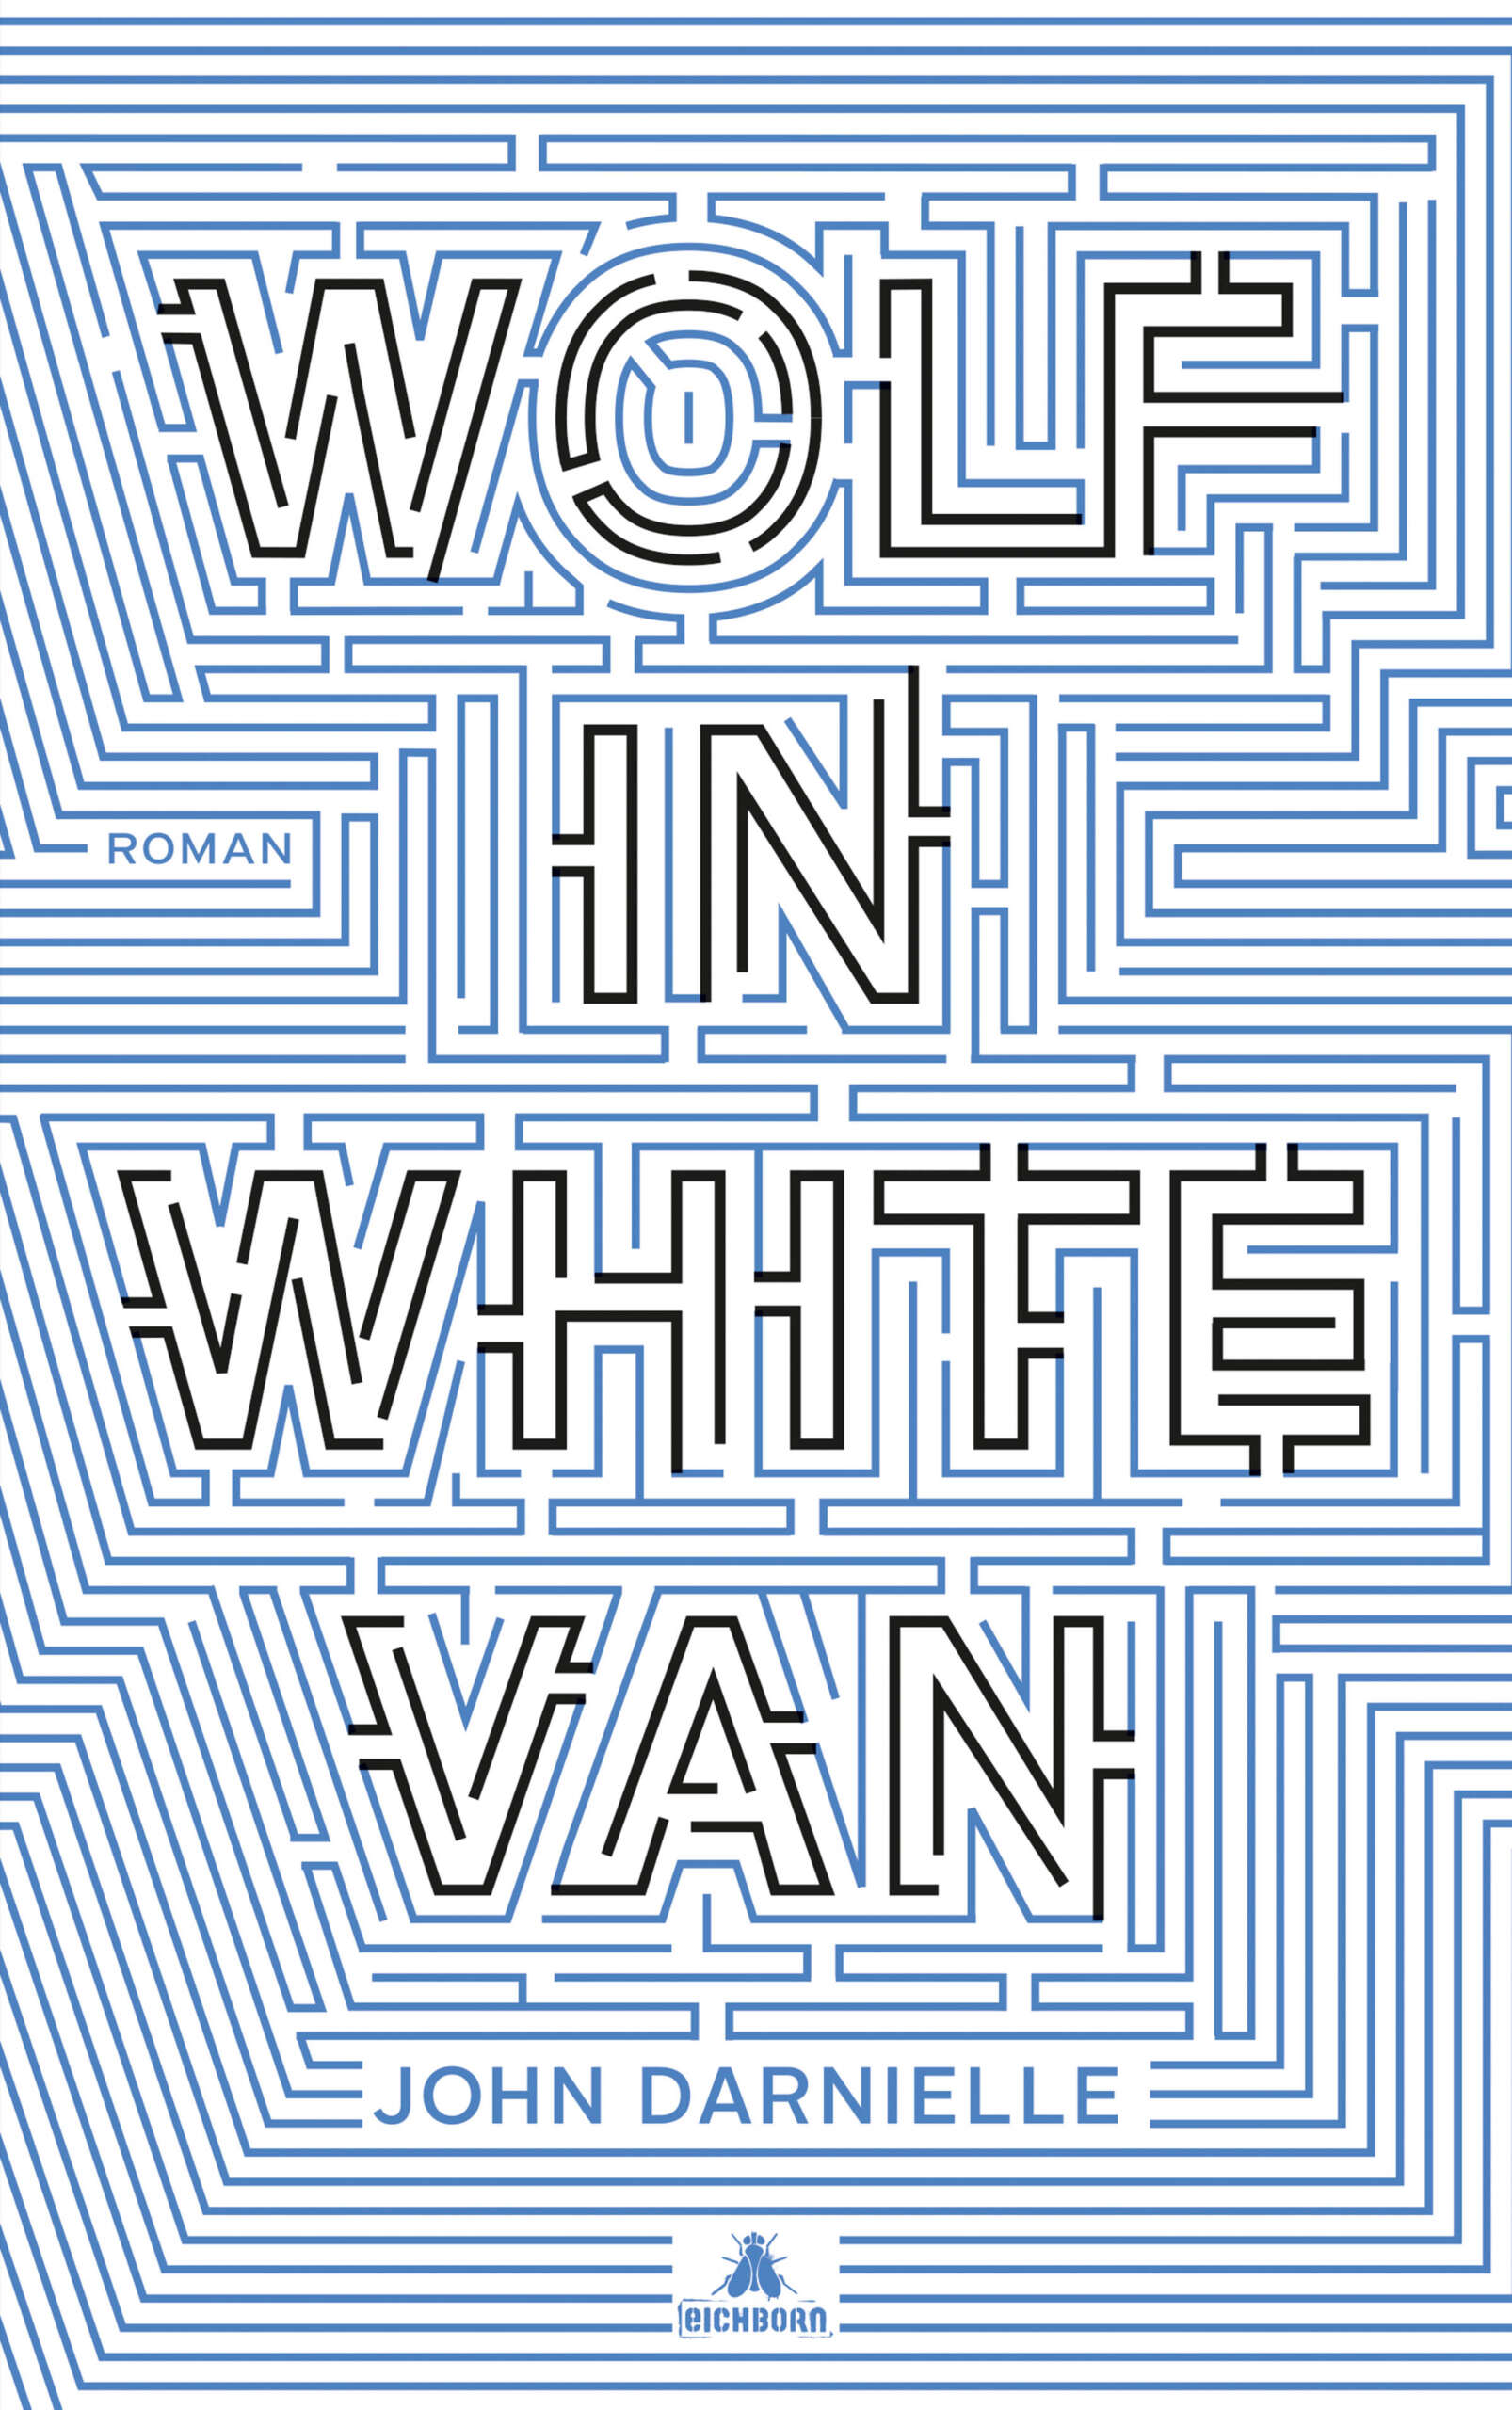 wolf in white van reviews